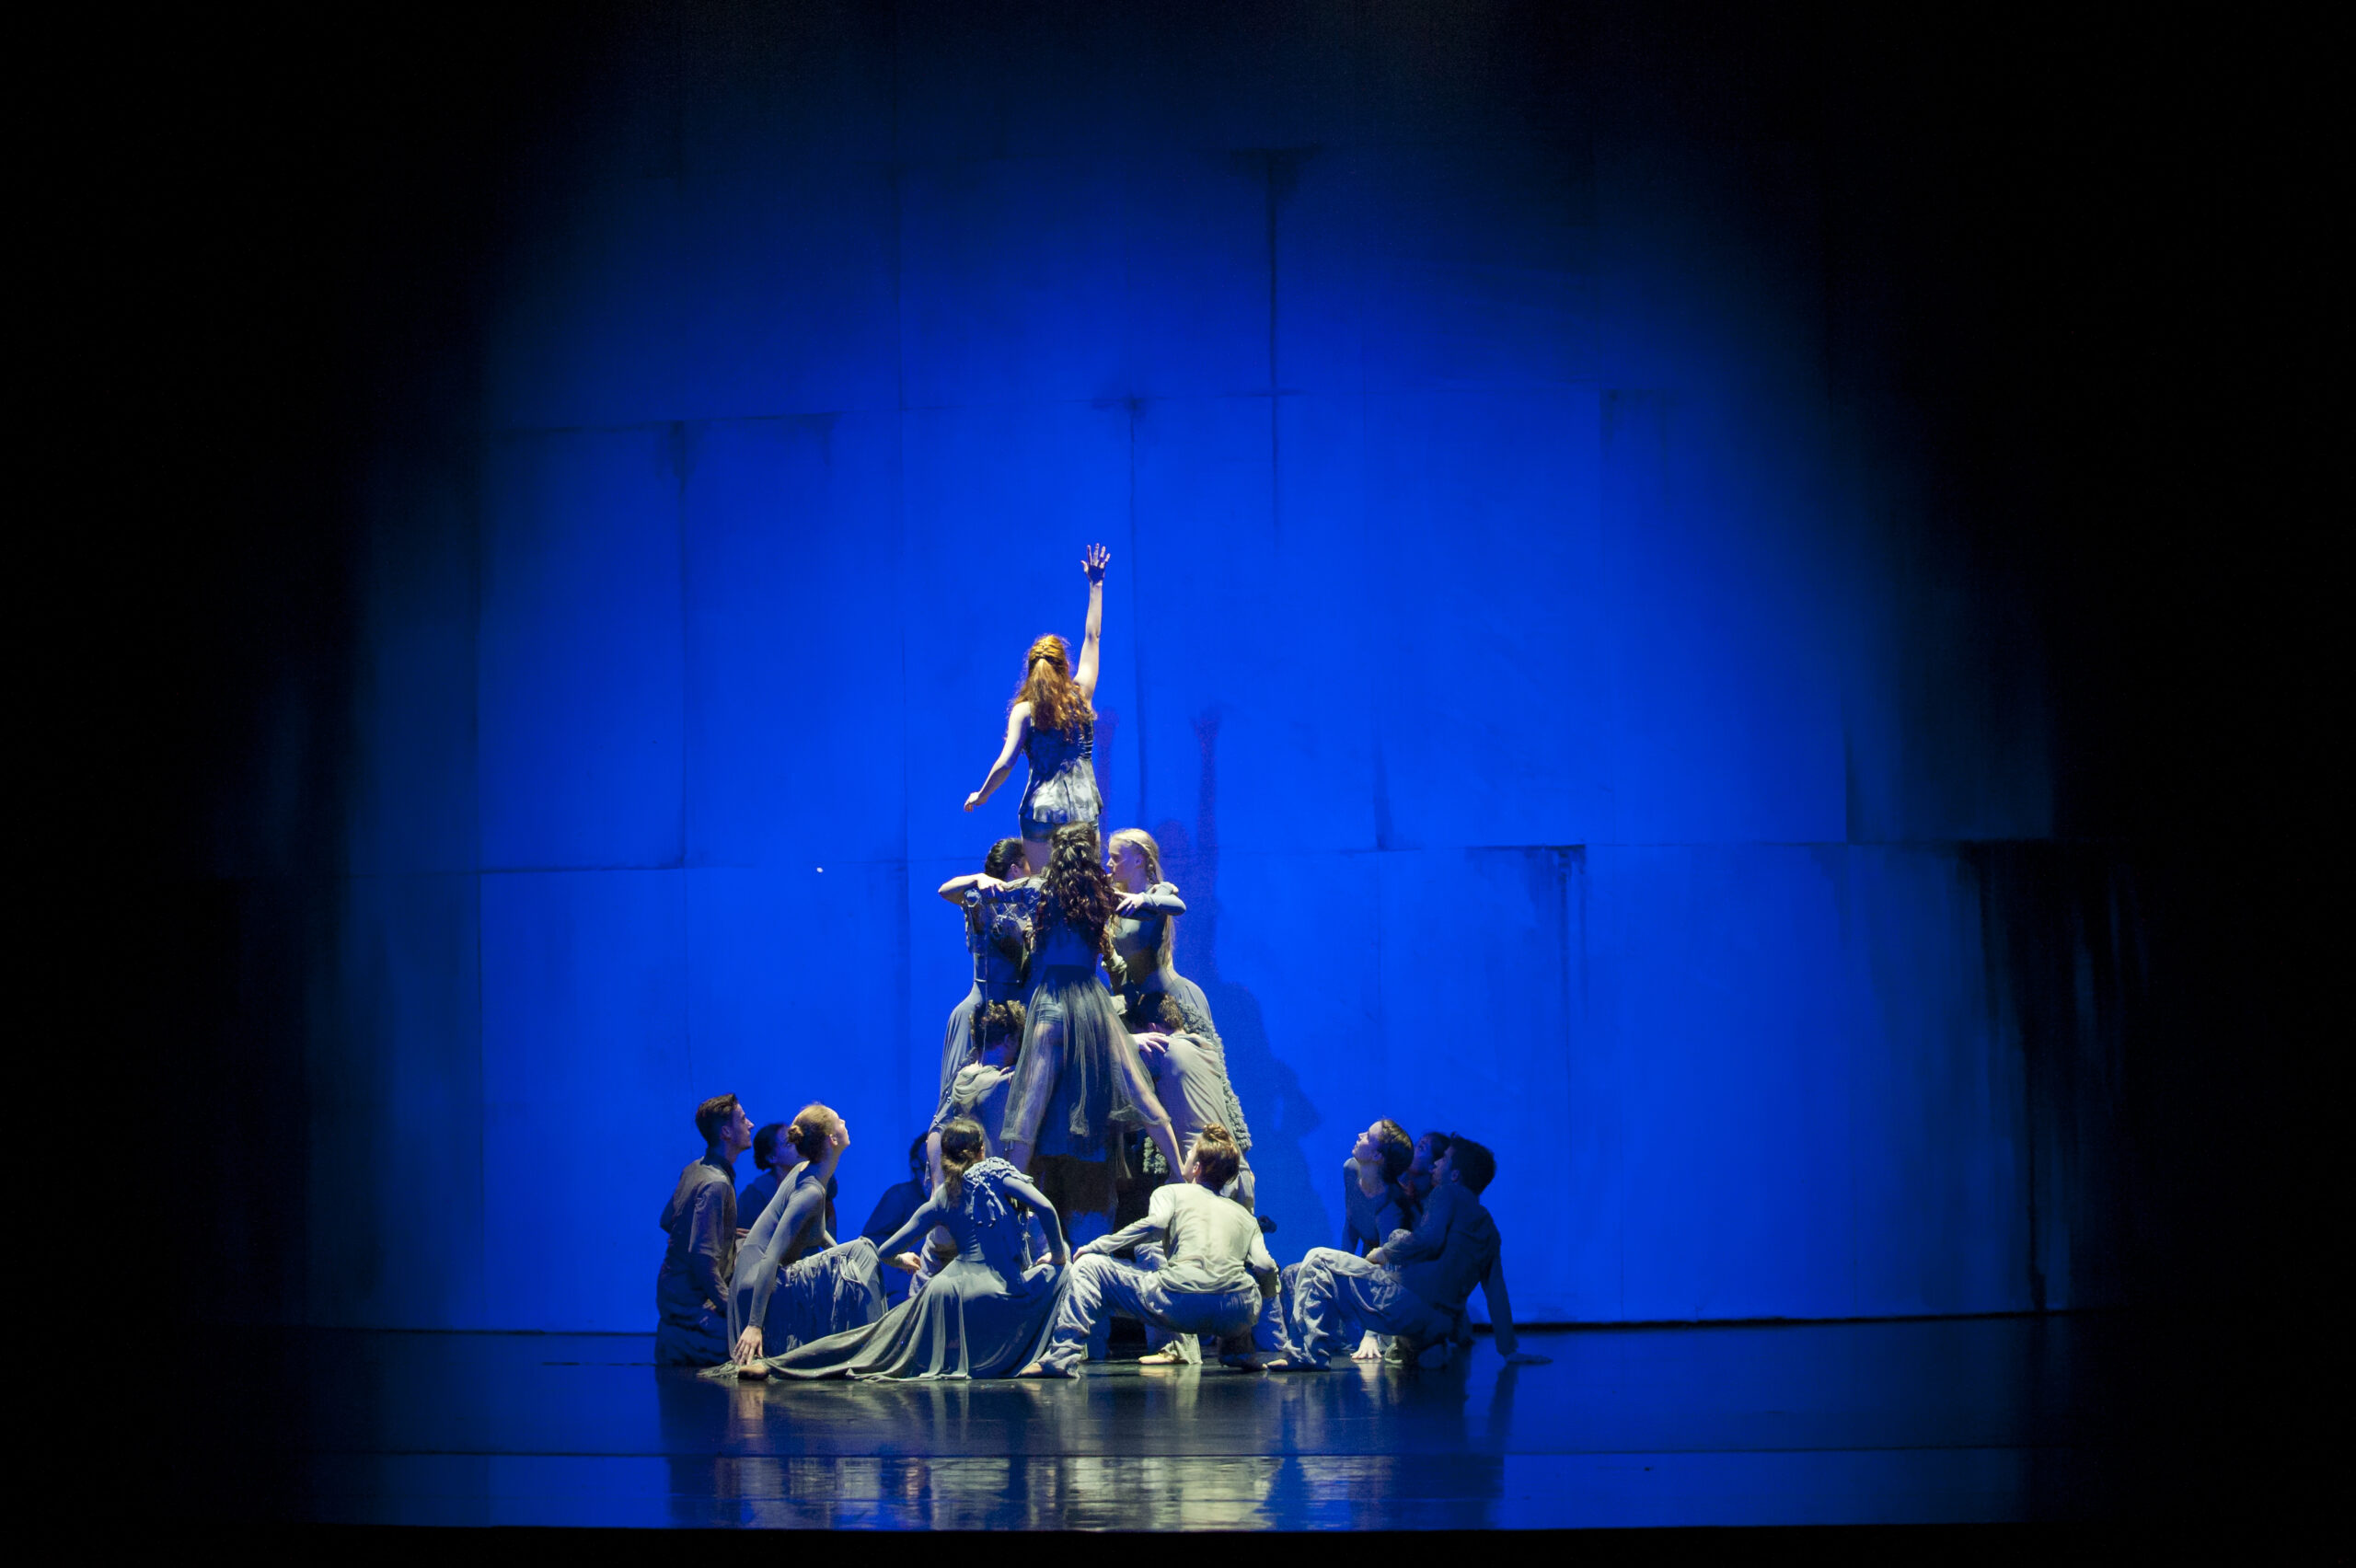 Ensembleszene aus "Treibgut", einem Choreografischen Musiktheater.